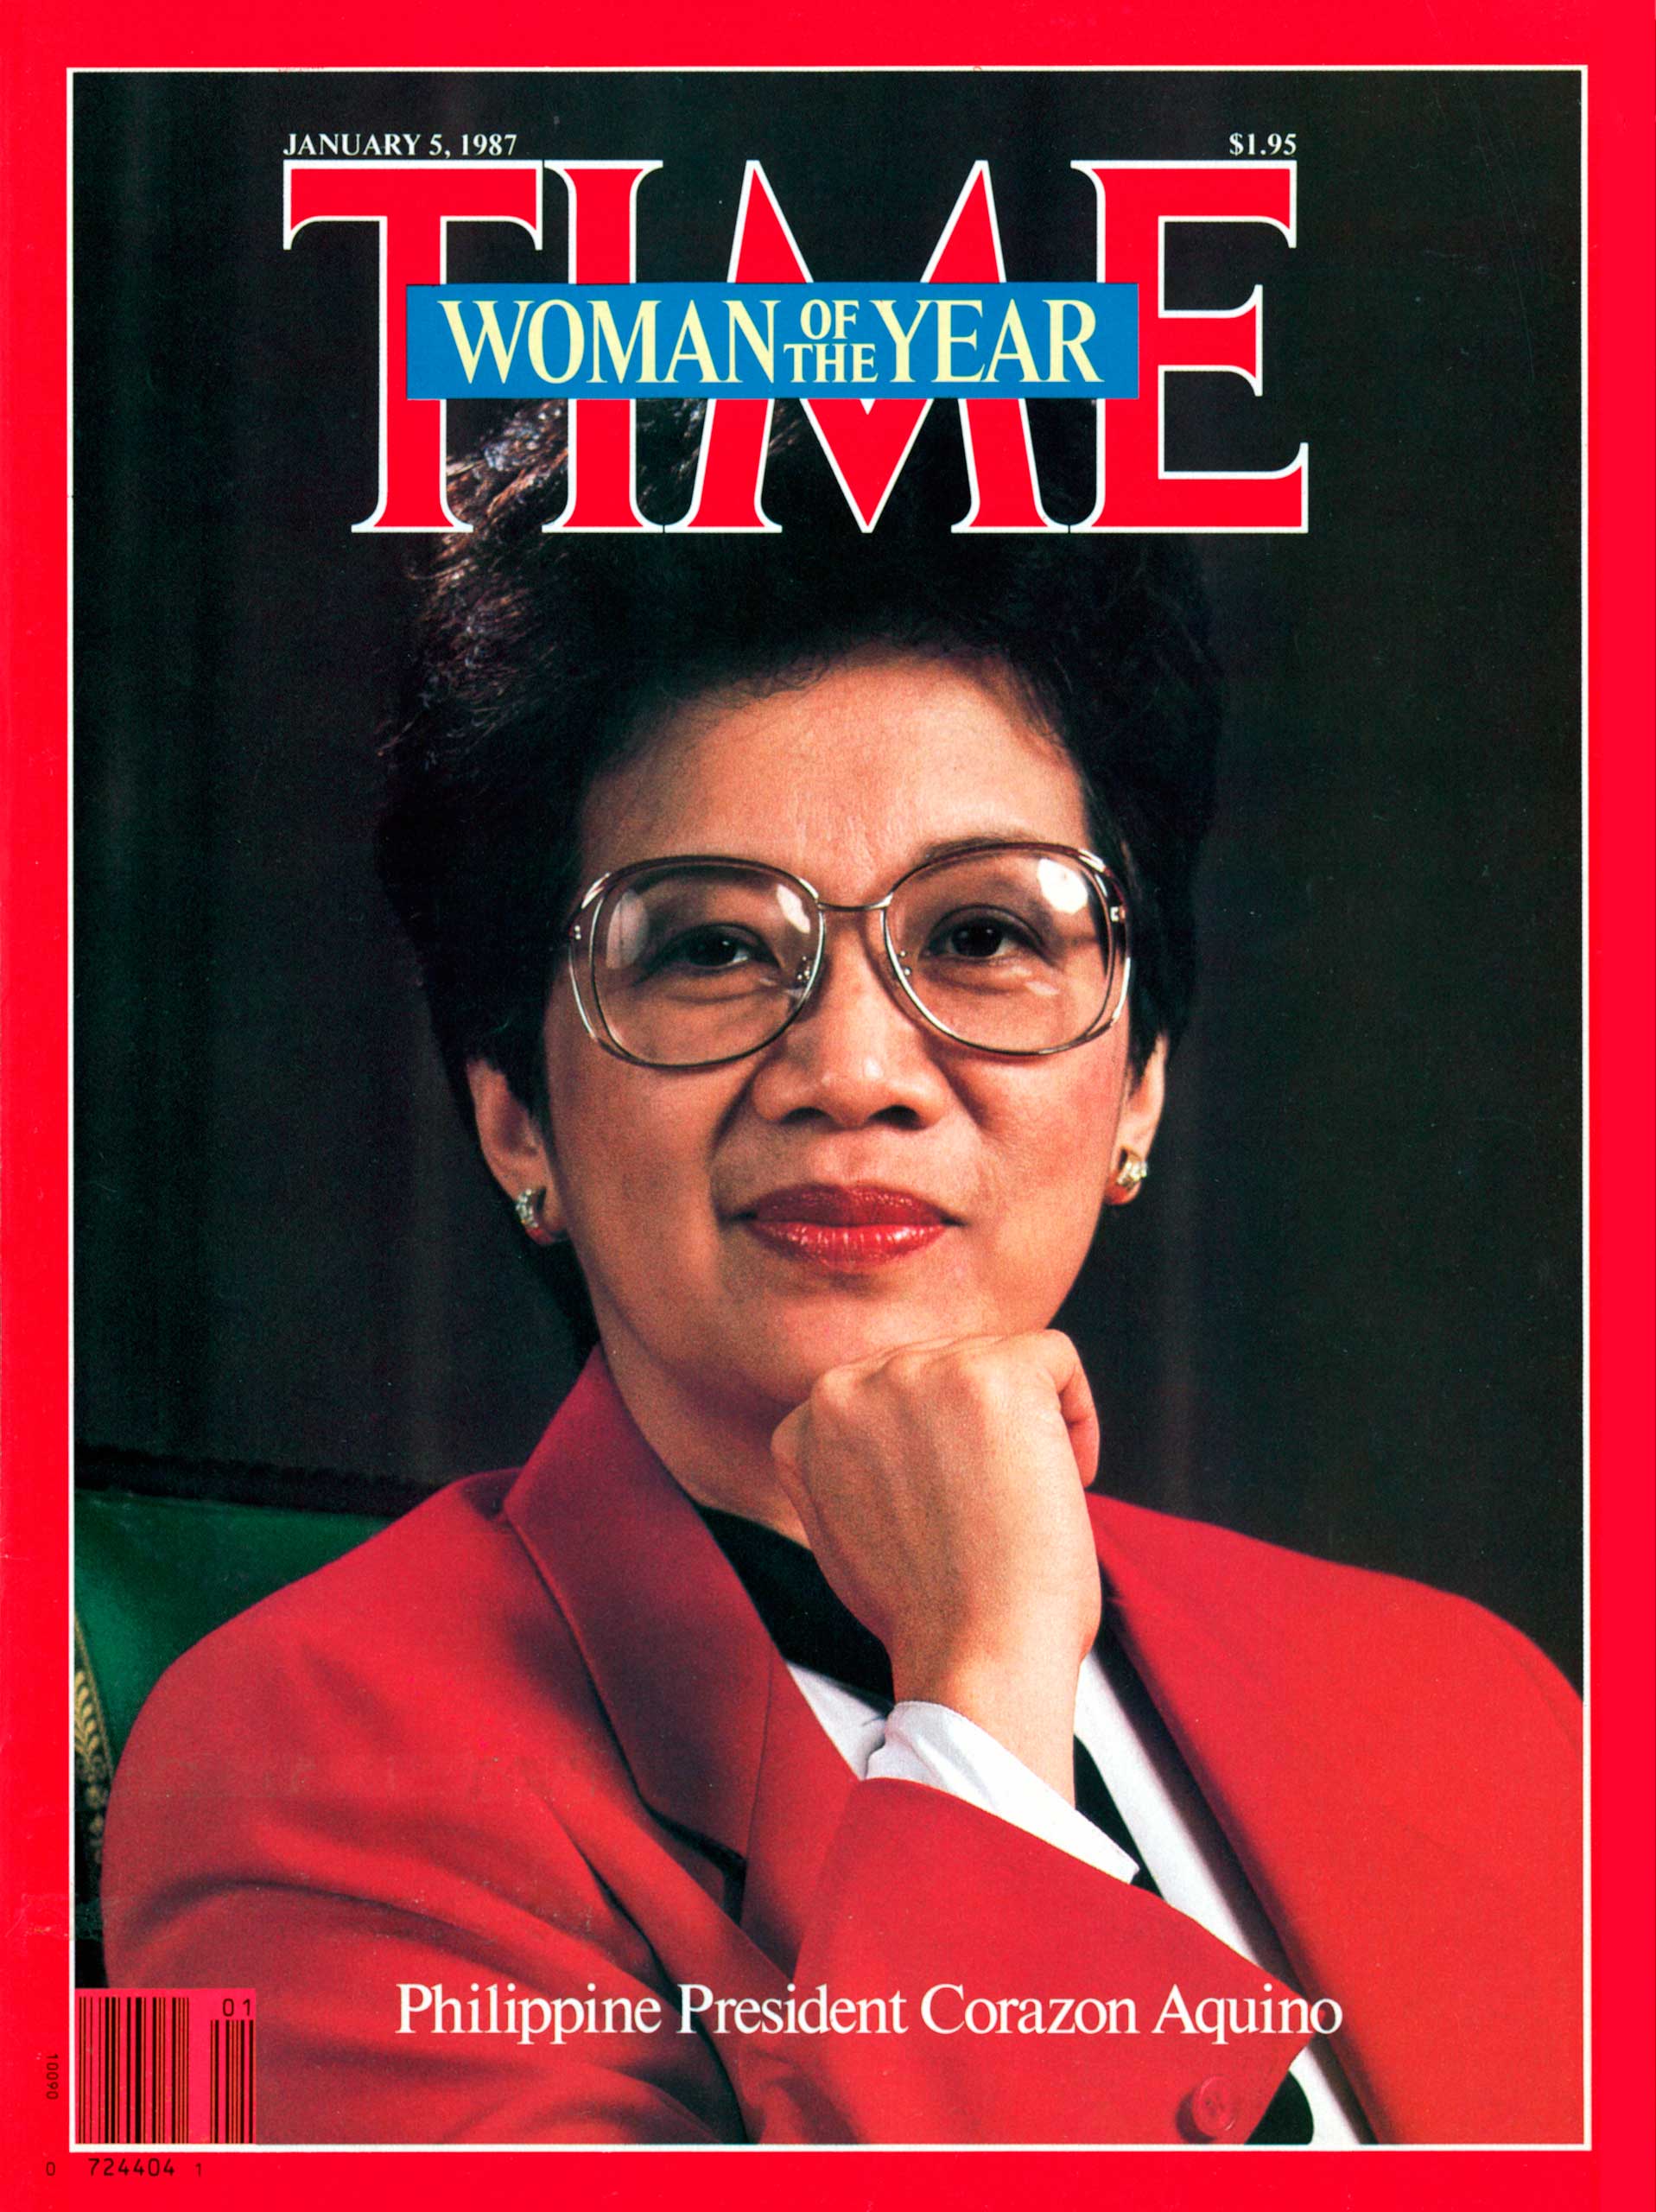 1986: Corazon Aquino